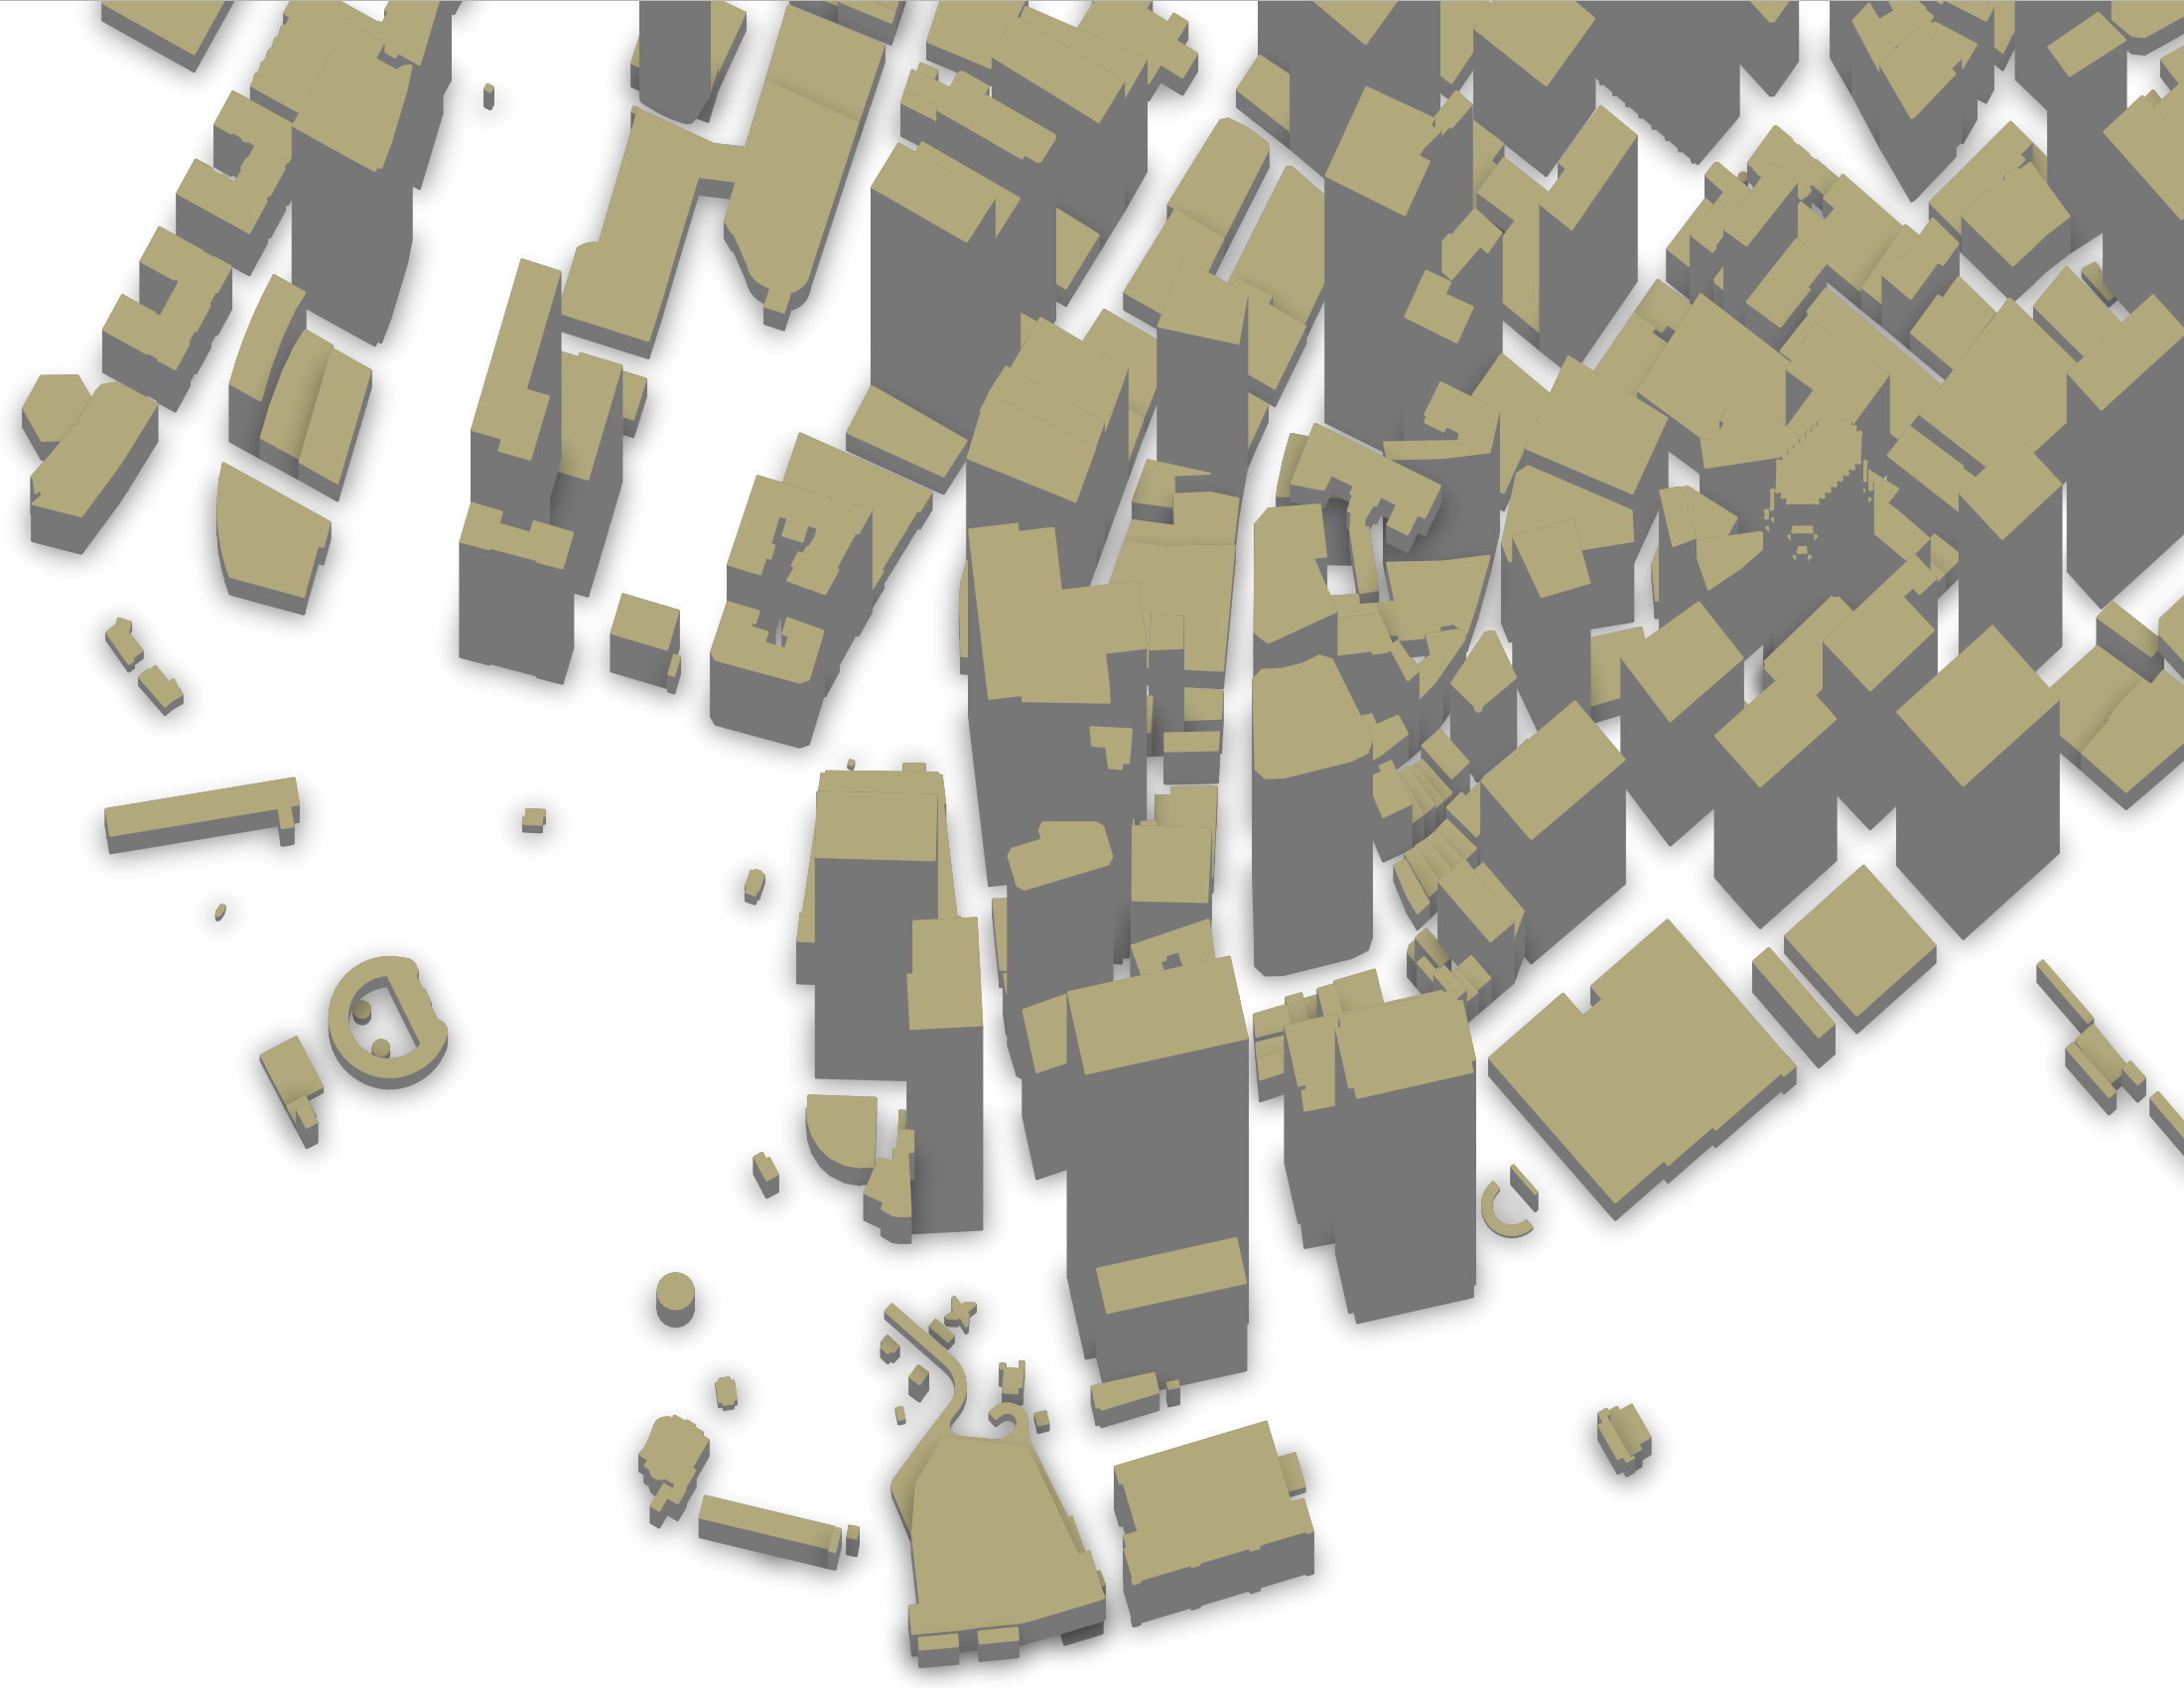 3D map of lower Manhatten